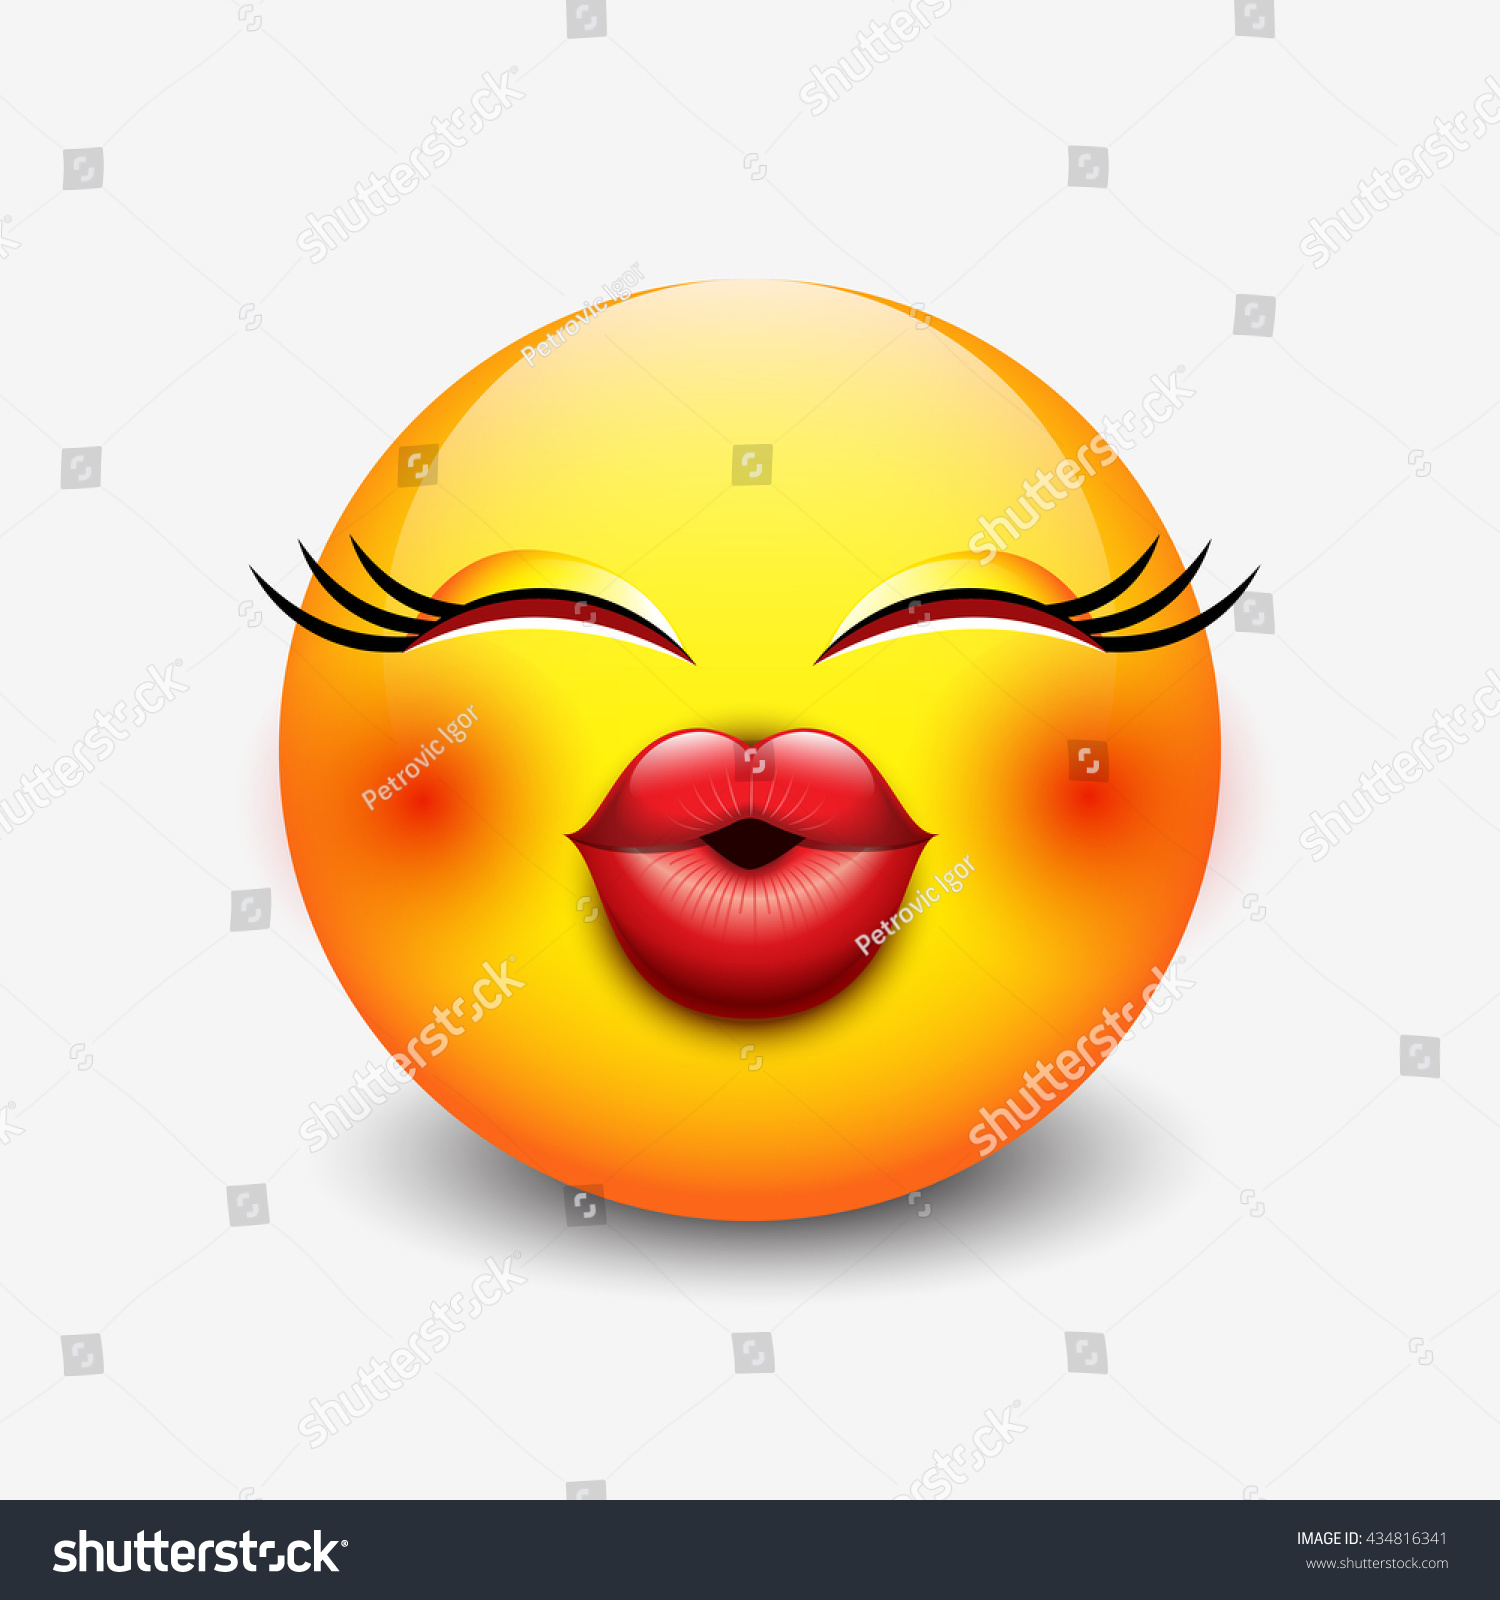 Cute Kissing Emoticon Emoji Smiley Vector Royalty Free Stock Vector 434816341